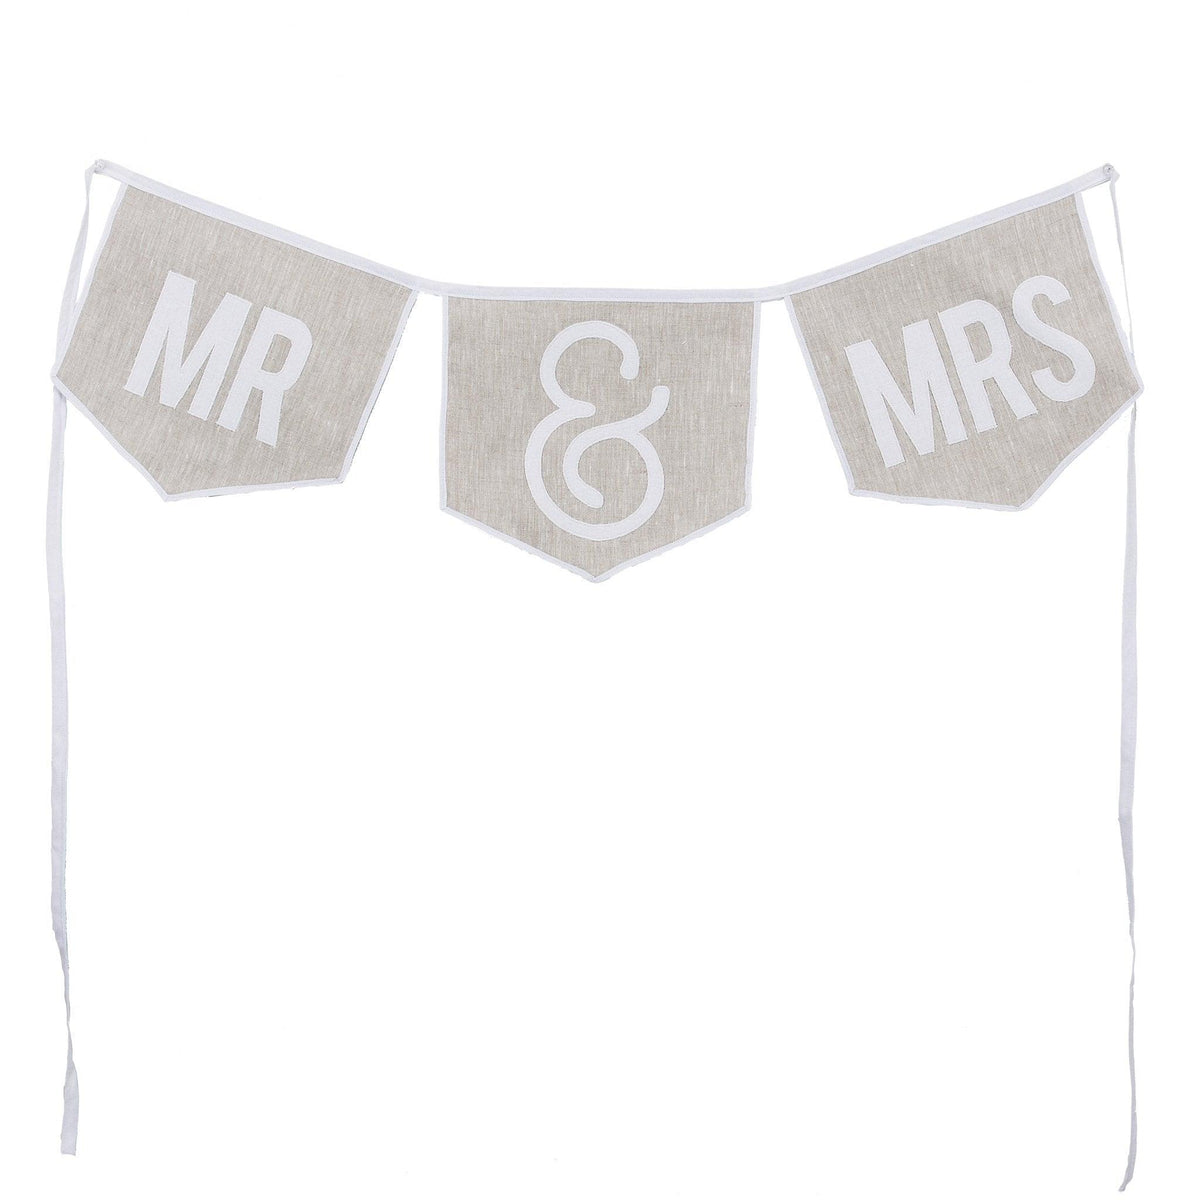 MR & MRS Banner - GLORY HAUS 